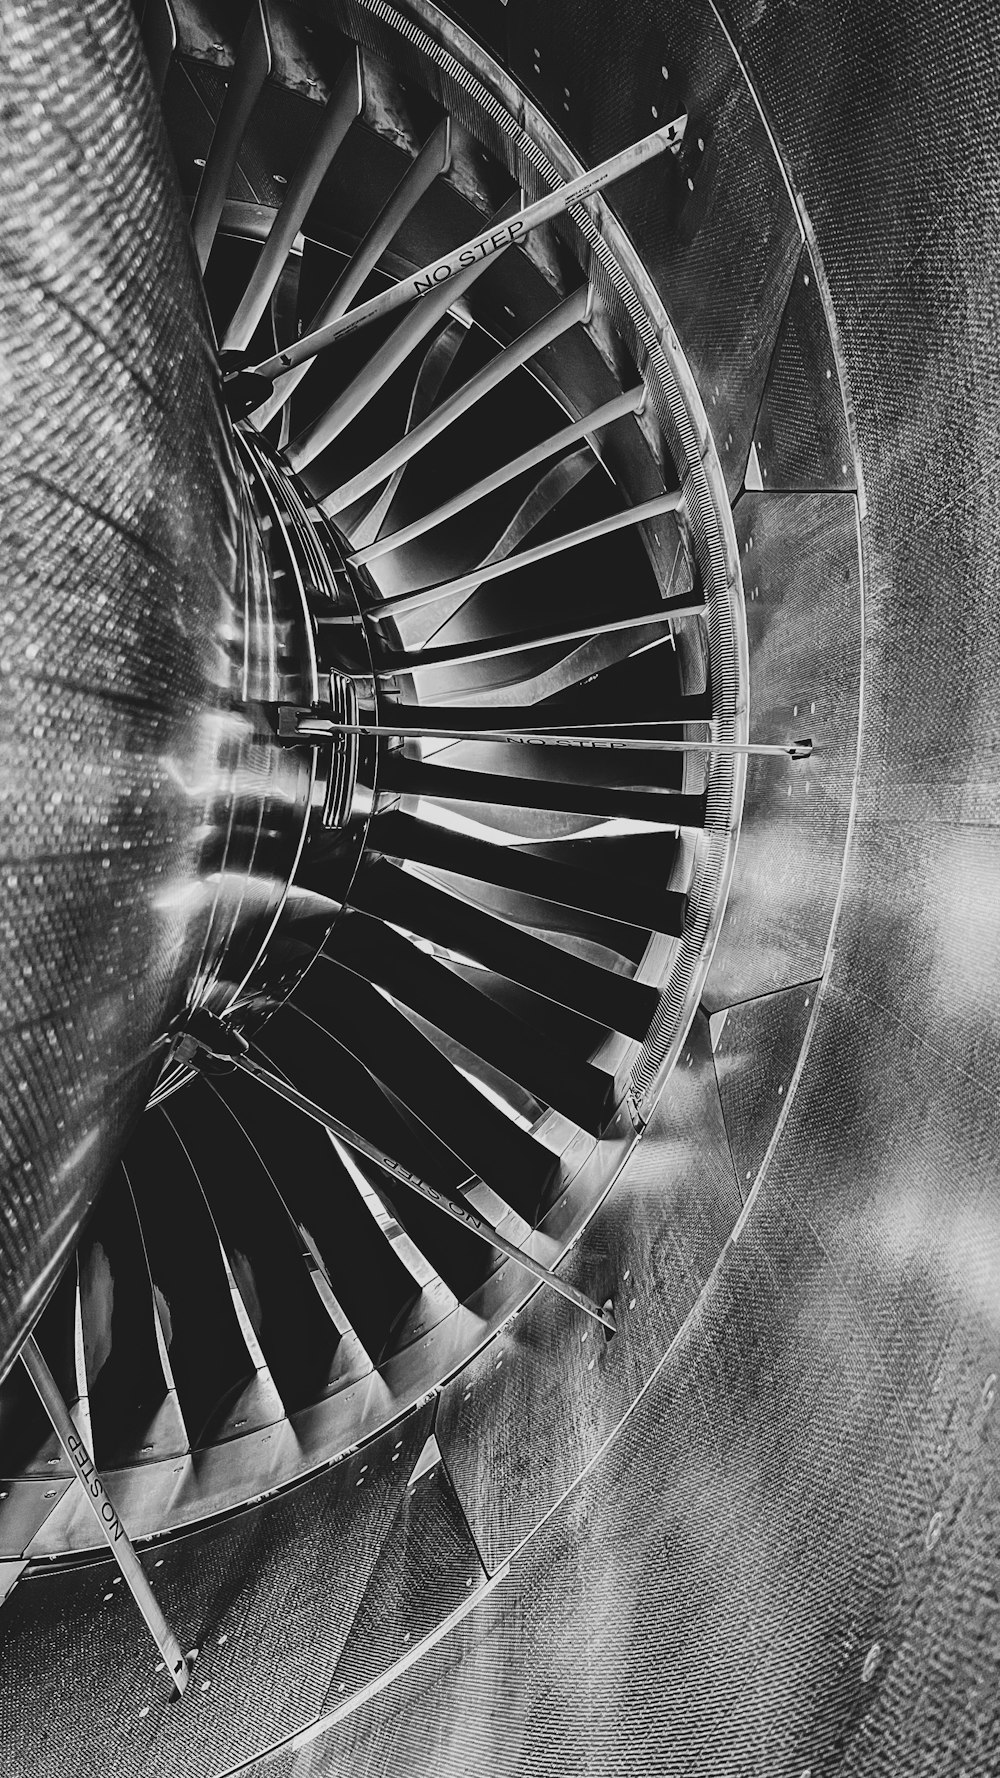 Une photo en noir et blanc d’une turbine